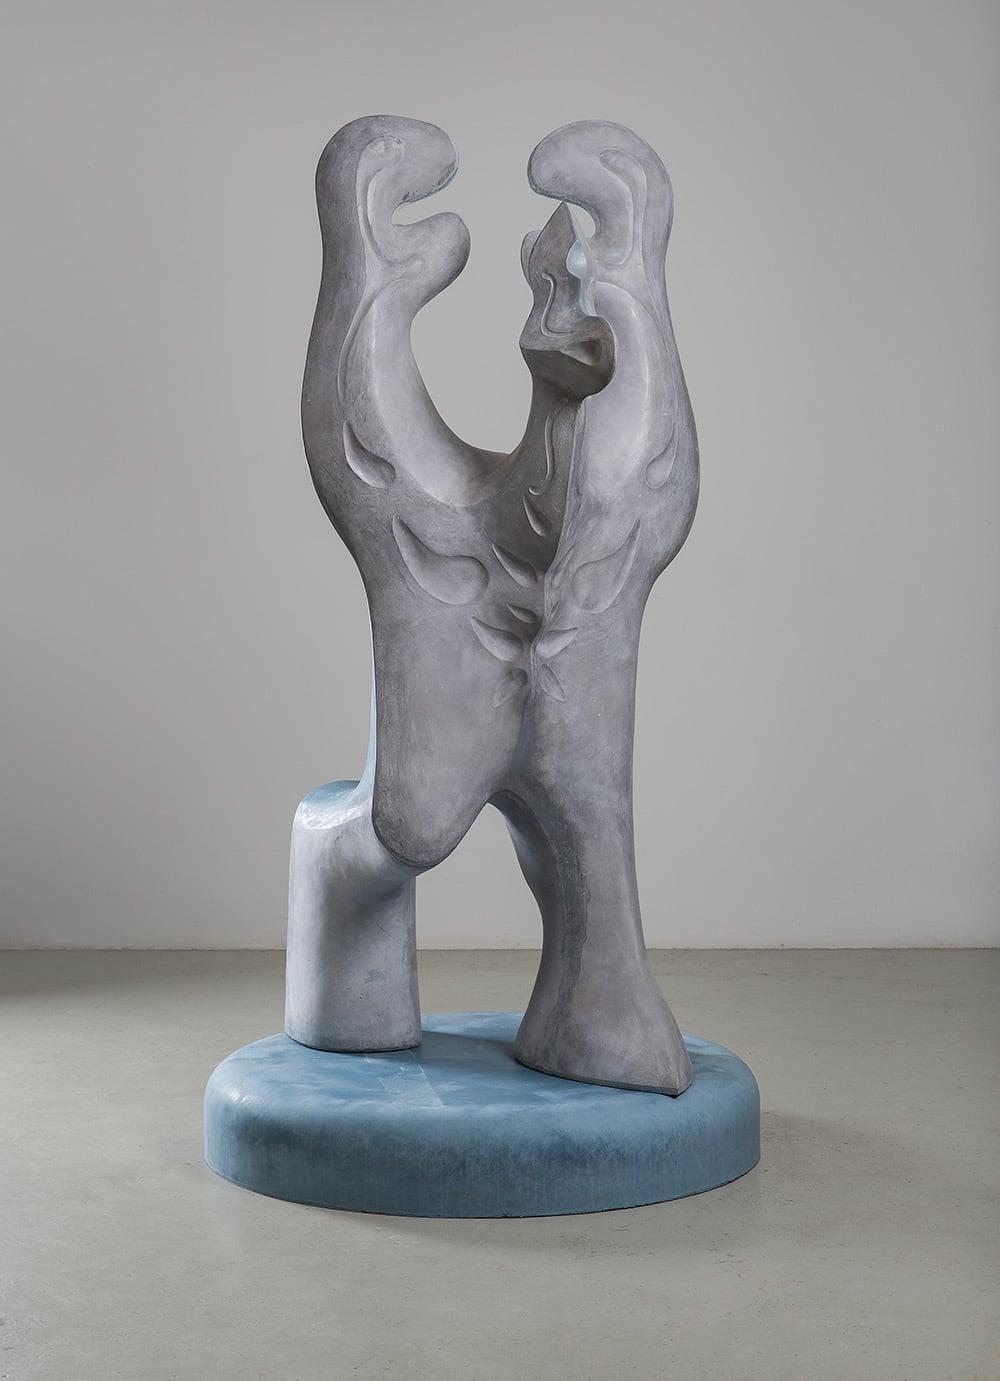 Big Creature est une sculpture unique en béton armé de fibres de verre (bleu/gris) de l'artiste contemporaine Pavlína Kvita, dont les dimensions sont de 225 × 120 × 120 cm (88.6 × 47.2 × 47.2 in). 
La sculpture est signée et accompagnée d'un